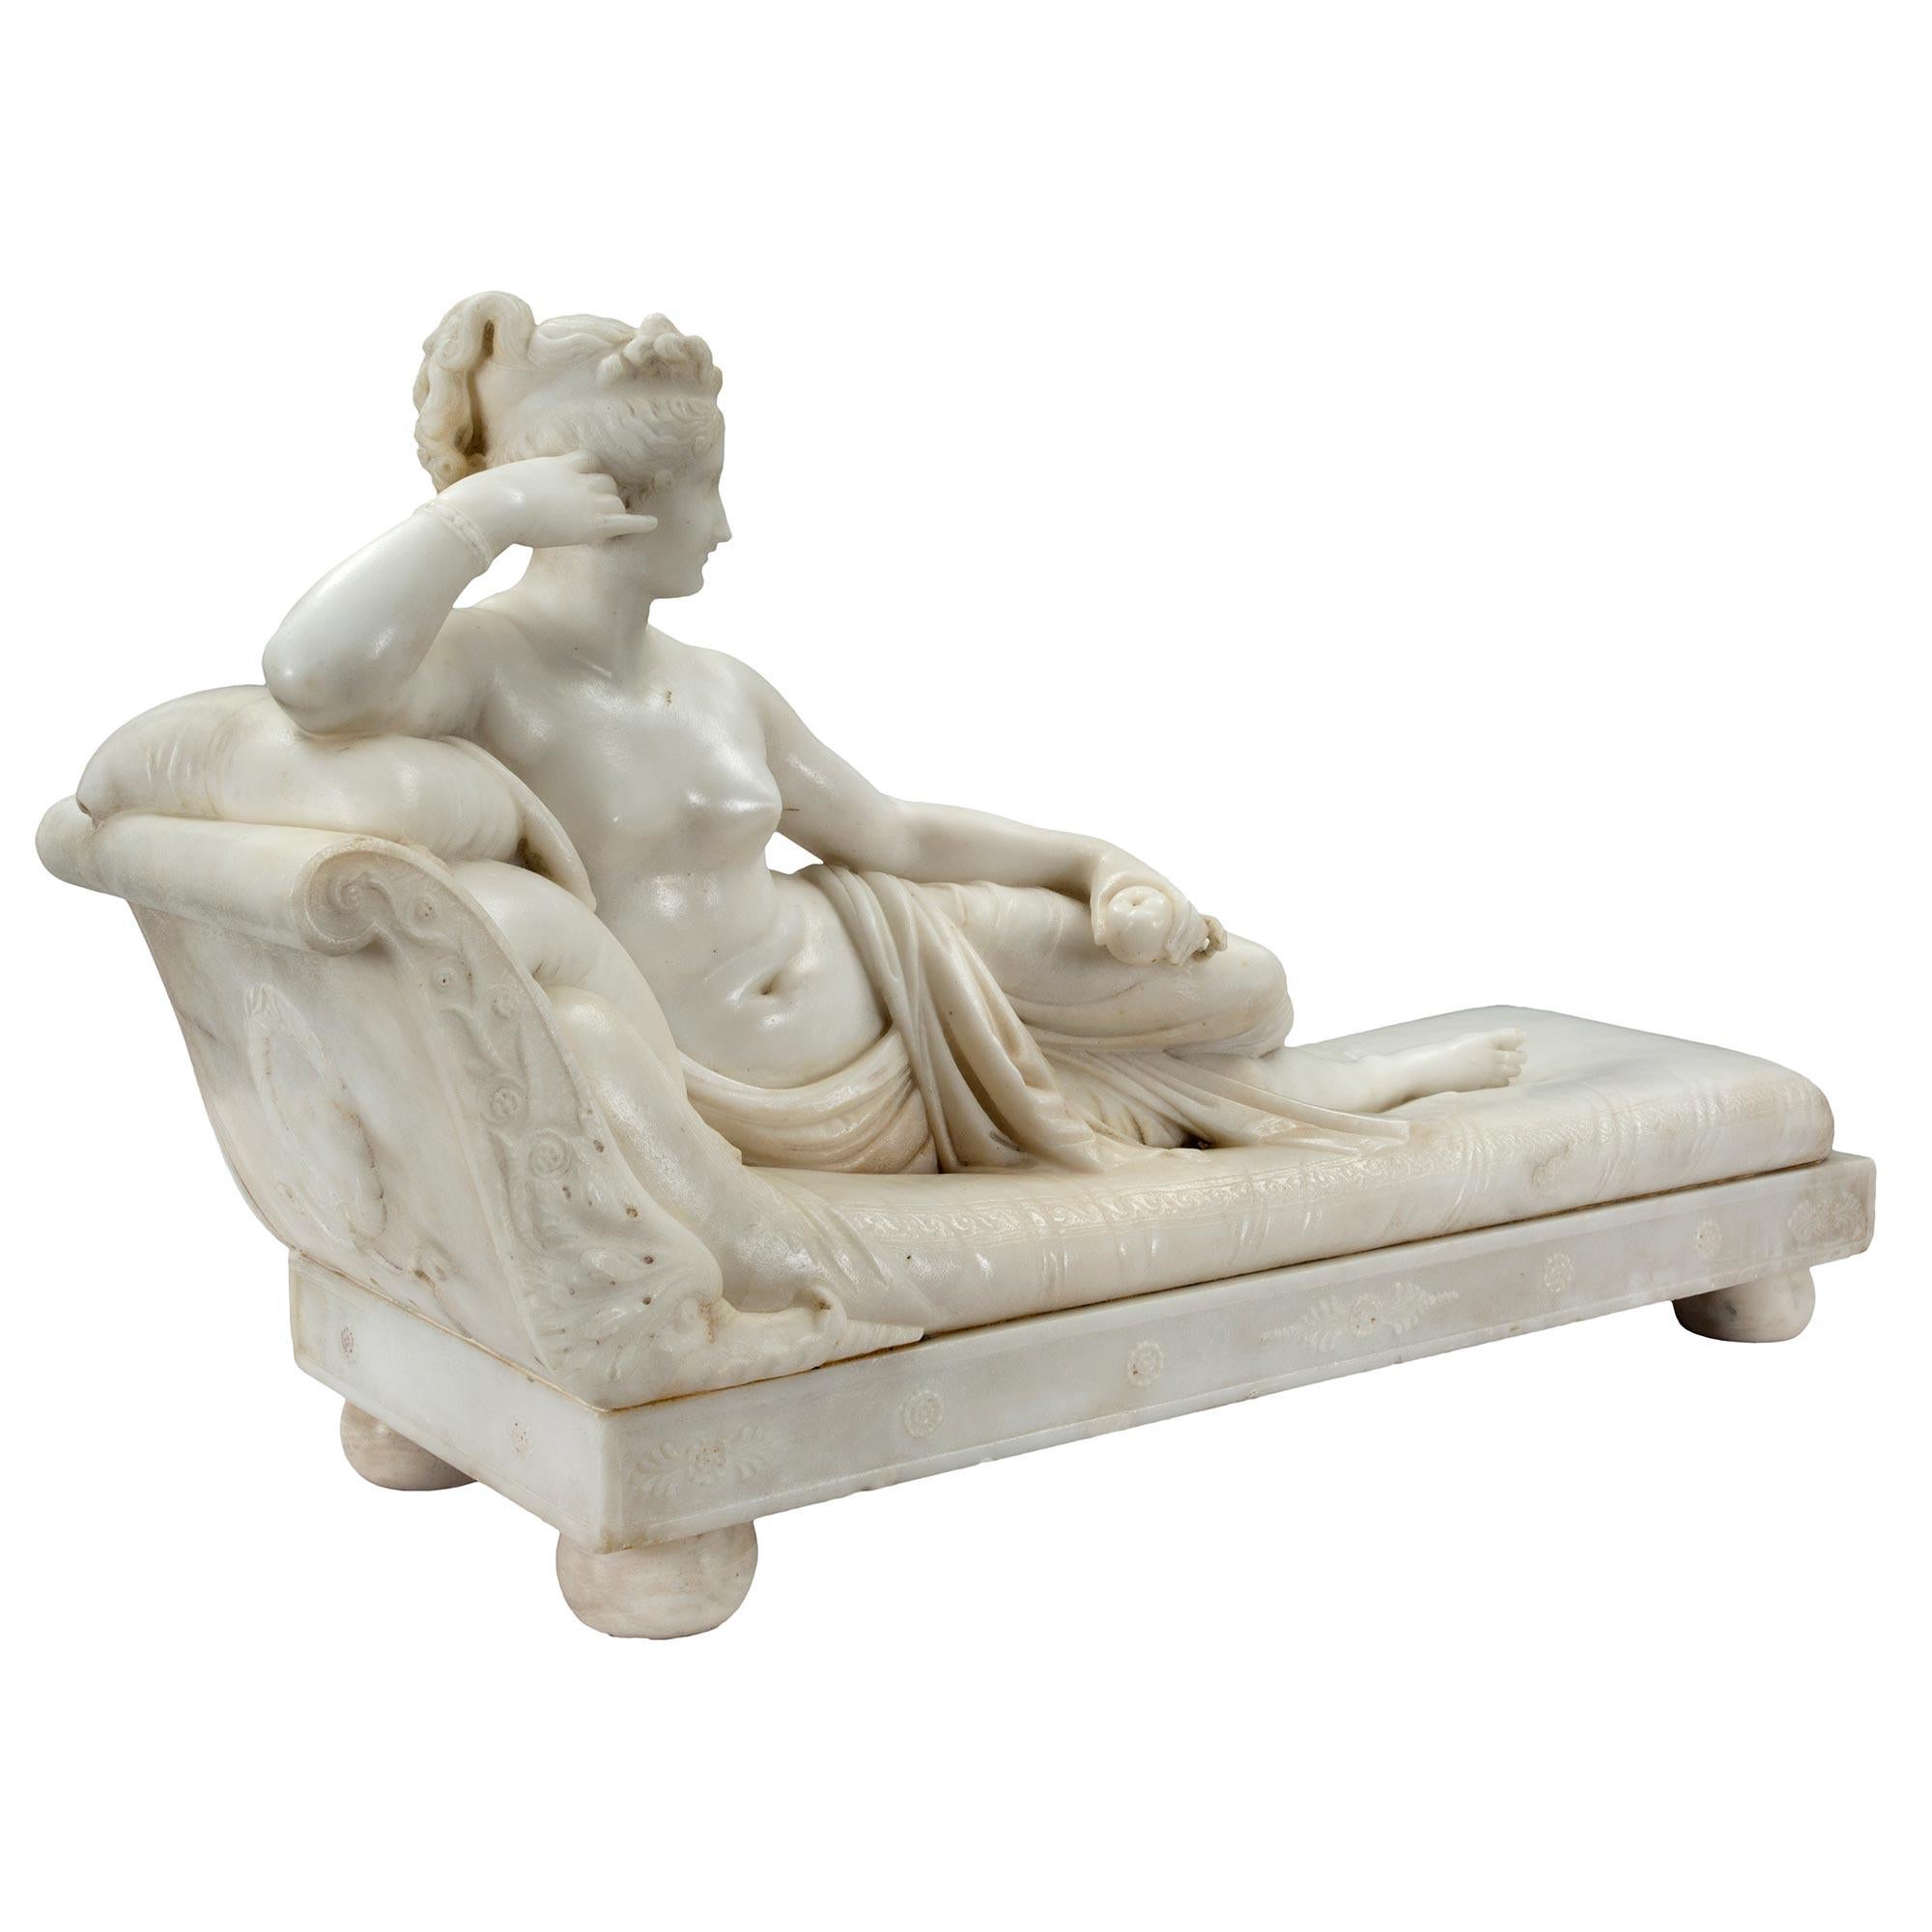 Eine spektakuläre italienische neoklassizistische Skulptur aus weißem Carrara-Marmor aus dem 19. Jahrhundert, signiert von Carlo Fossi, die Paulina Bonaparte darstellt. Paulina war die Schwester von Kaiser Napoleon und ist auf ihrem Bett liegend